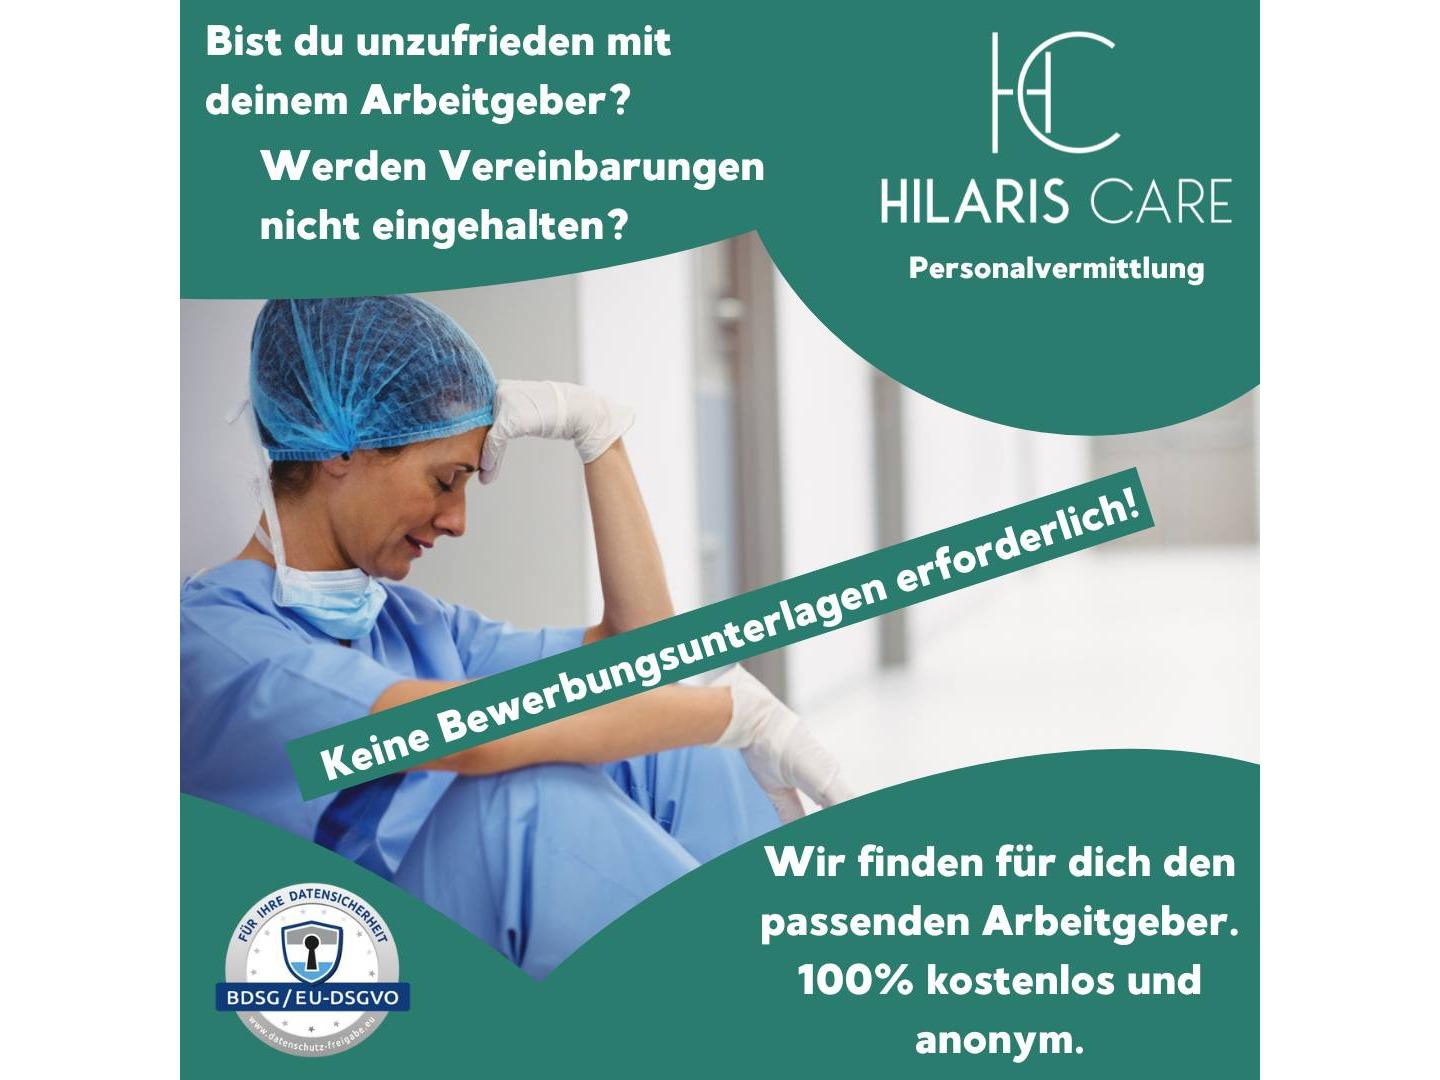 Bilder Hilaris Care GmbH